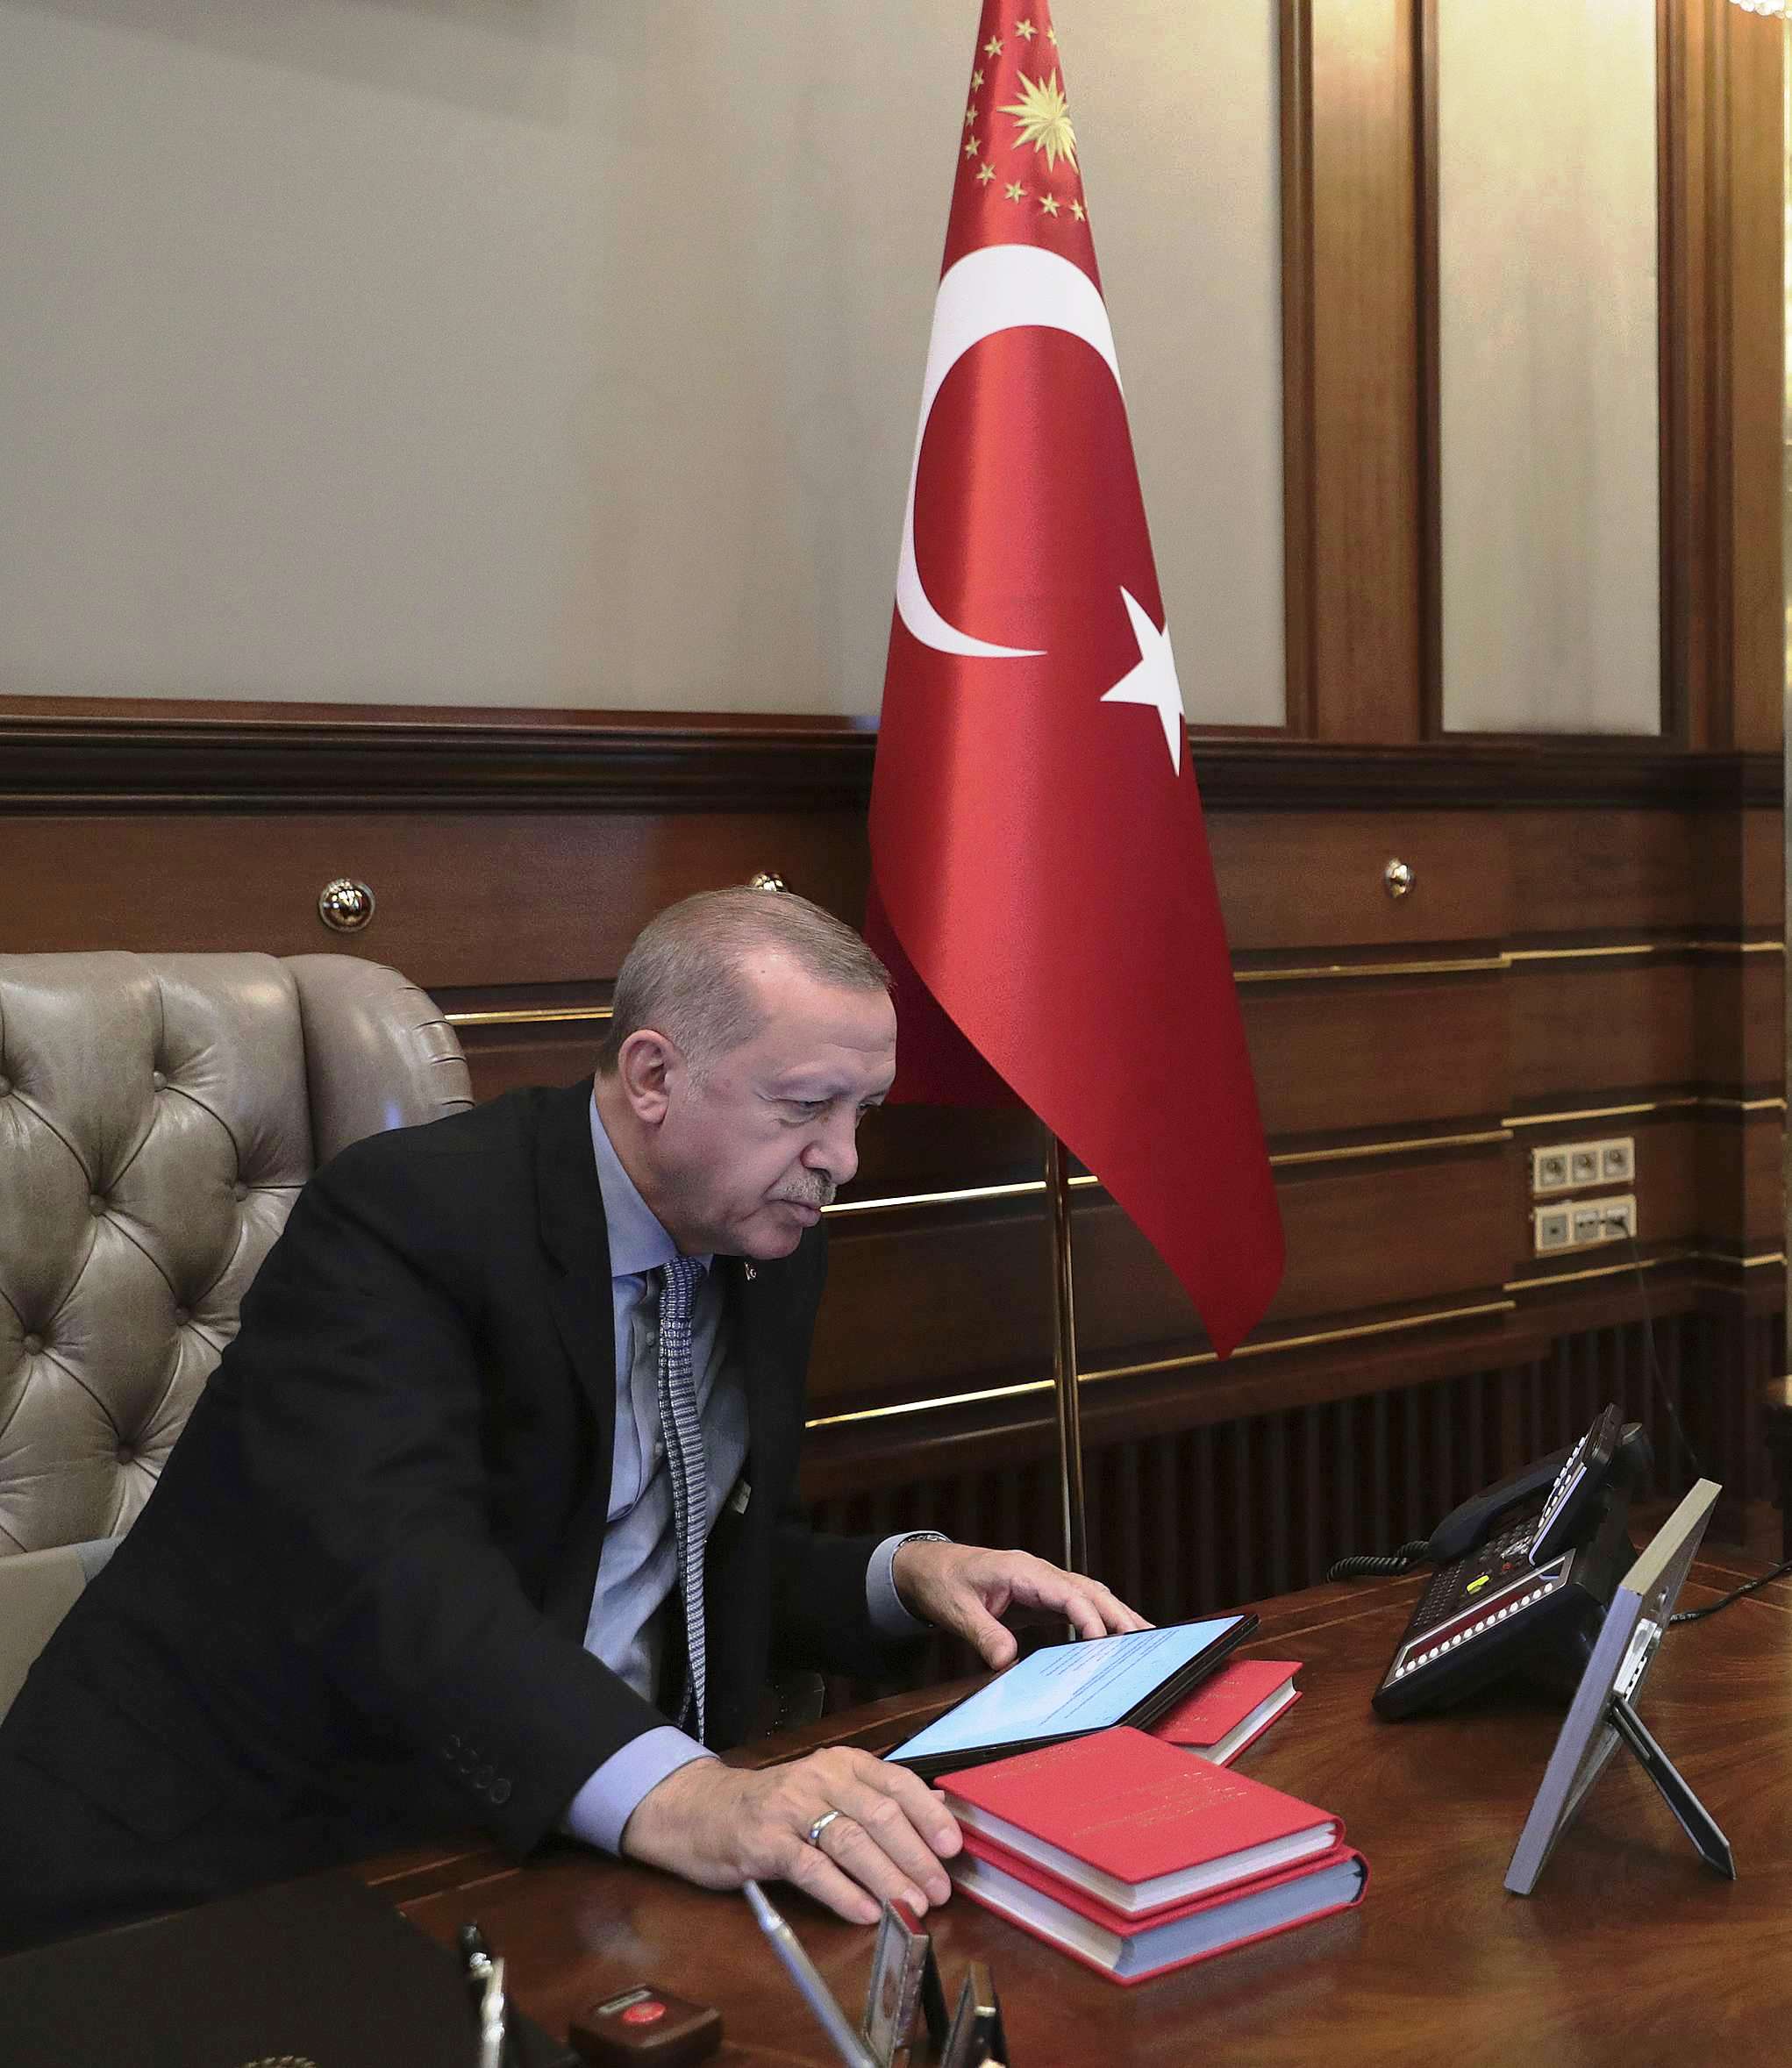 أردوغان يخوض مغامرة عسكرية ستكون عواقبها وخيمة على الاقتصاد التركي المتعثر أصلا